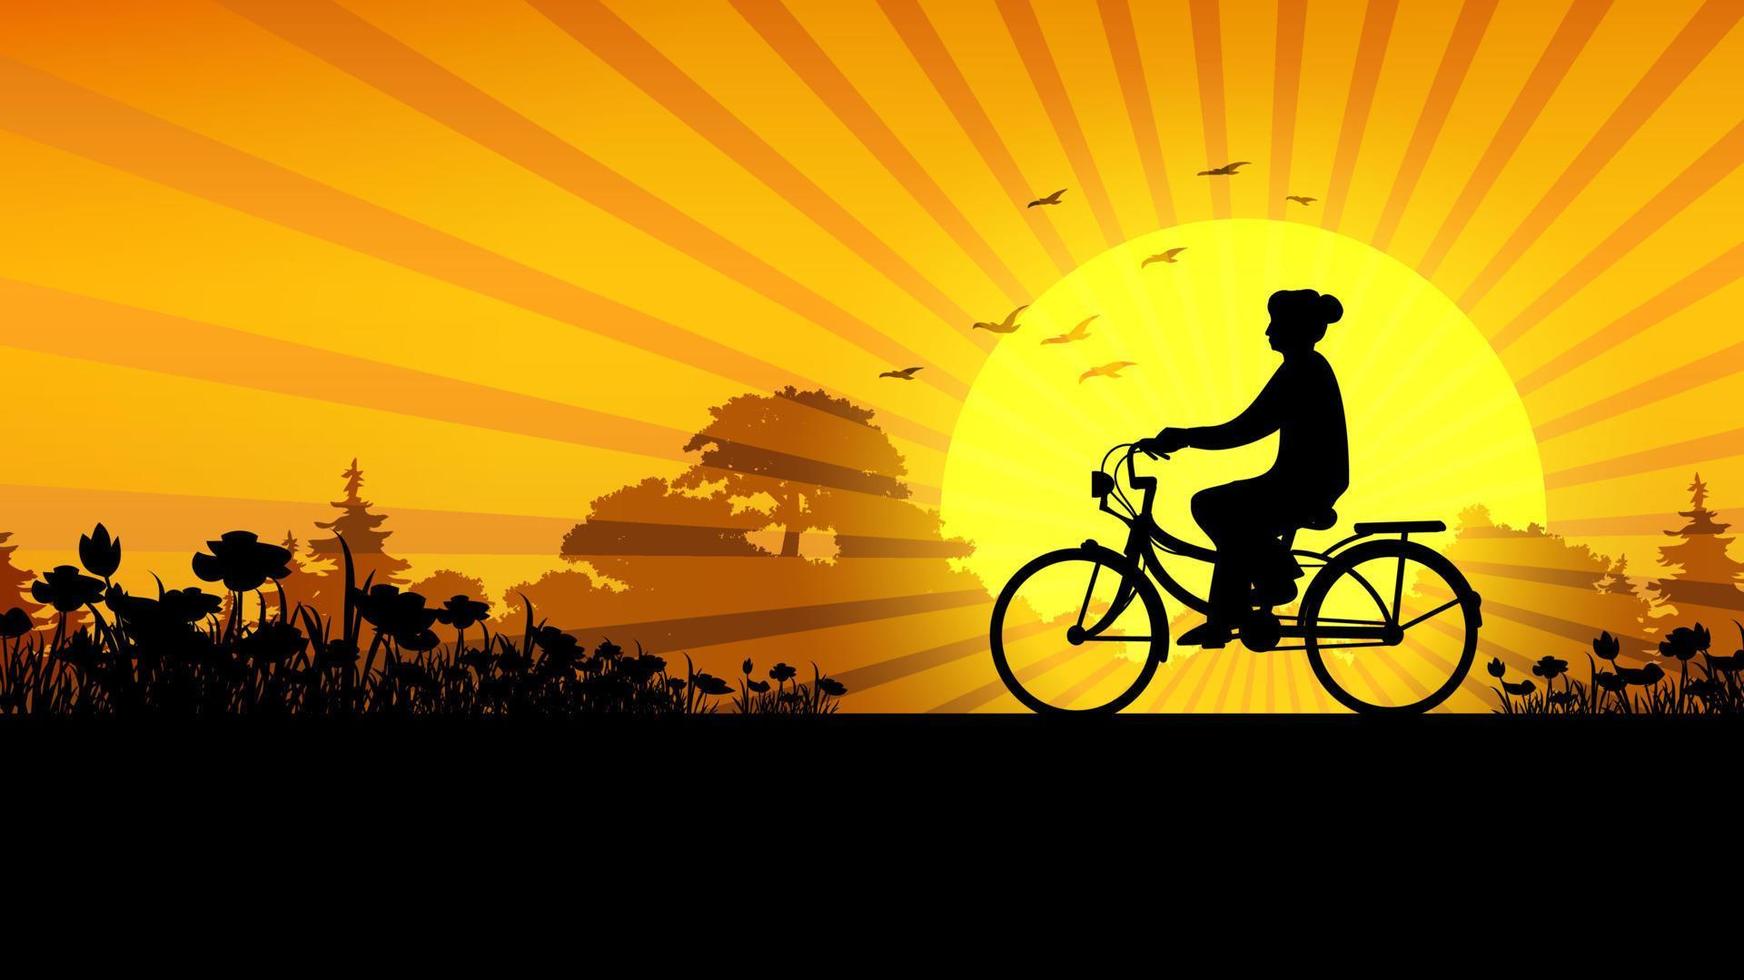 persoon in silhouet fiets op zonsondergang vector